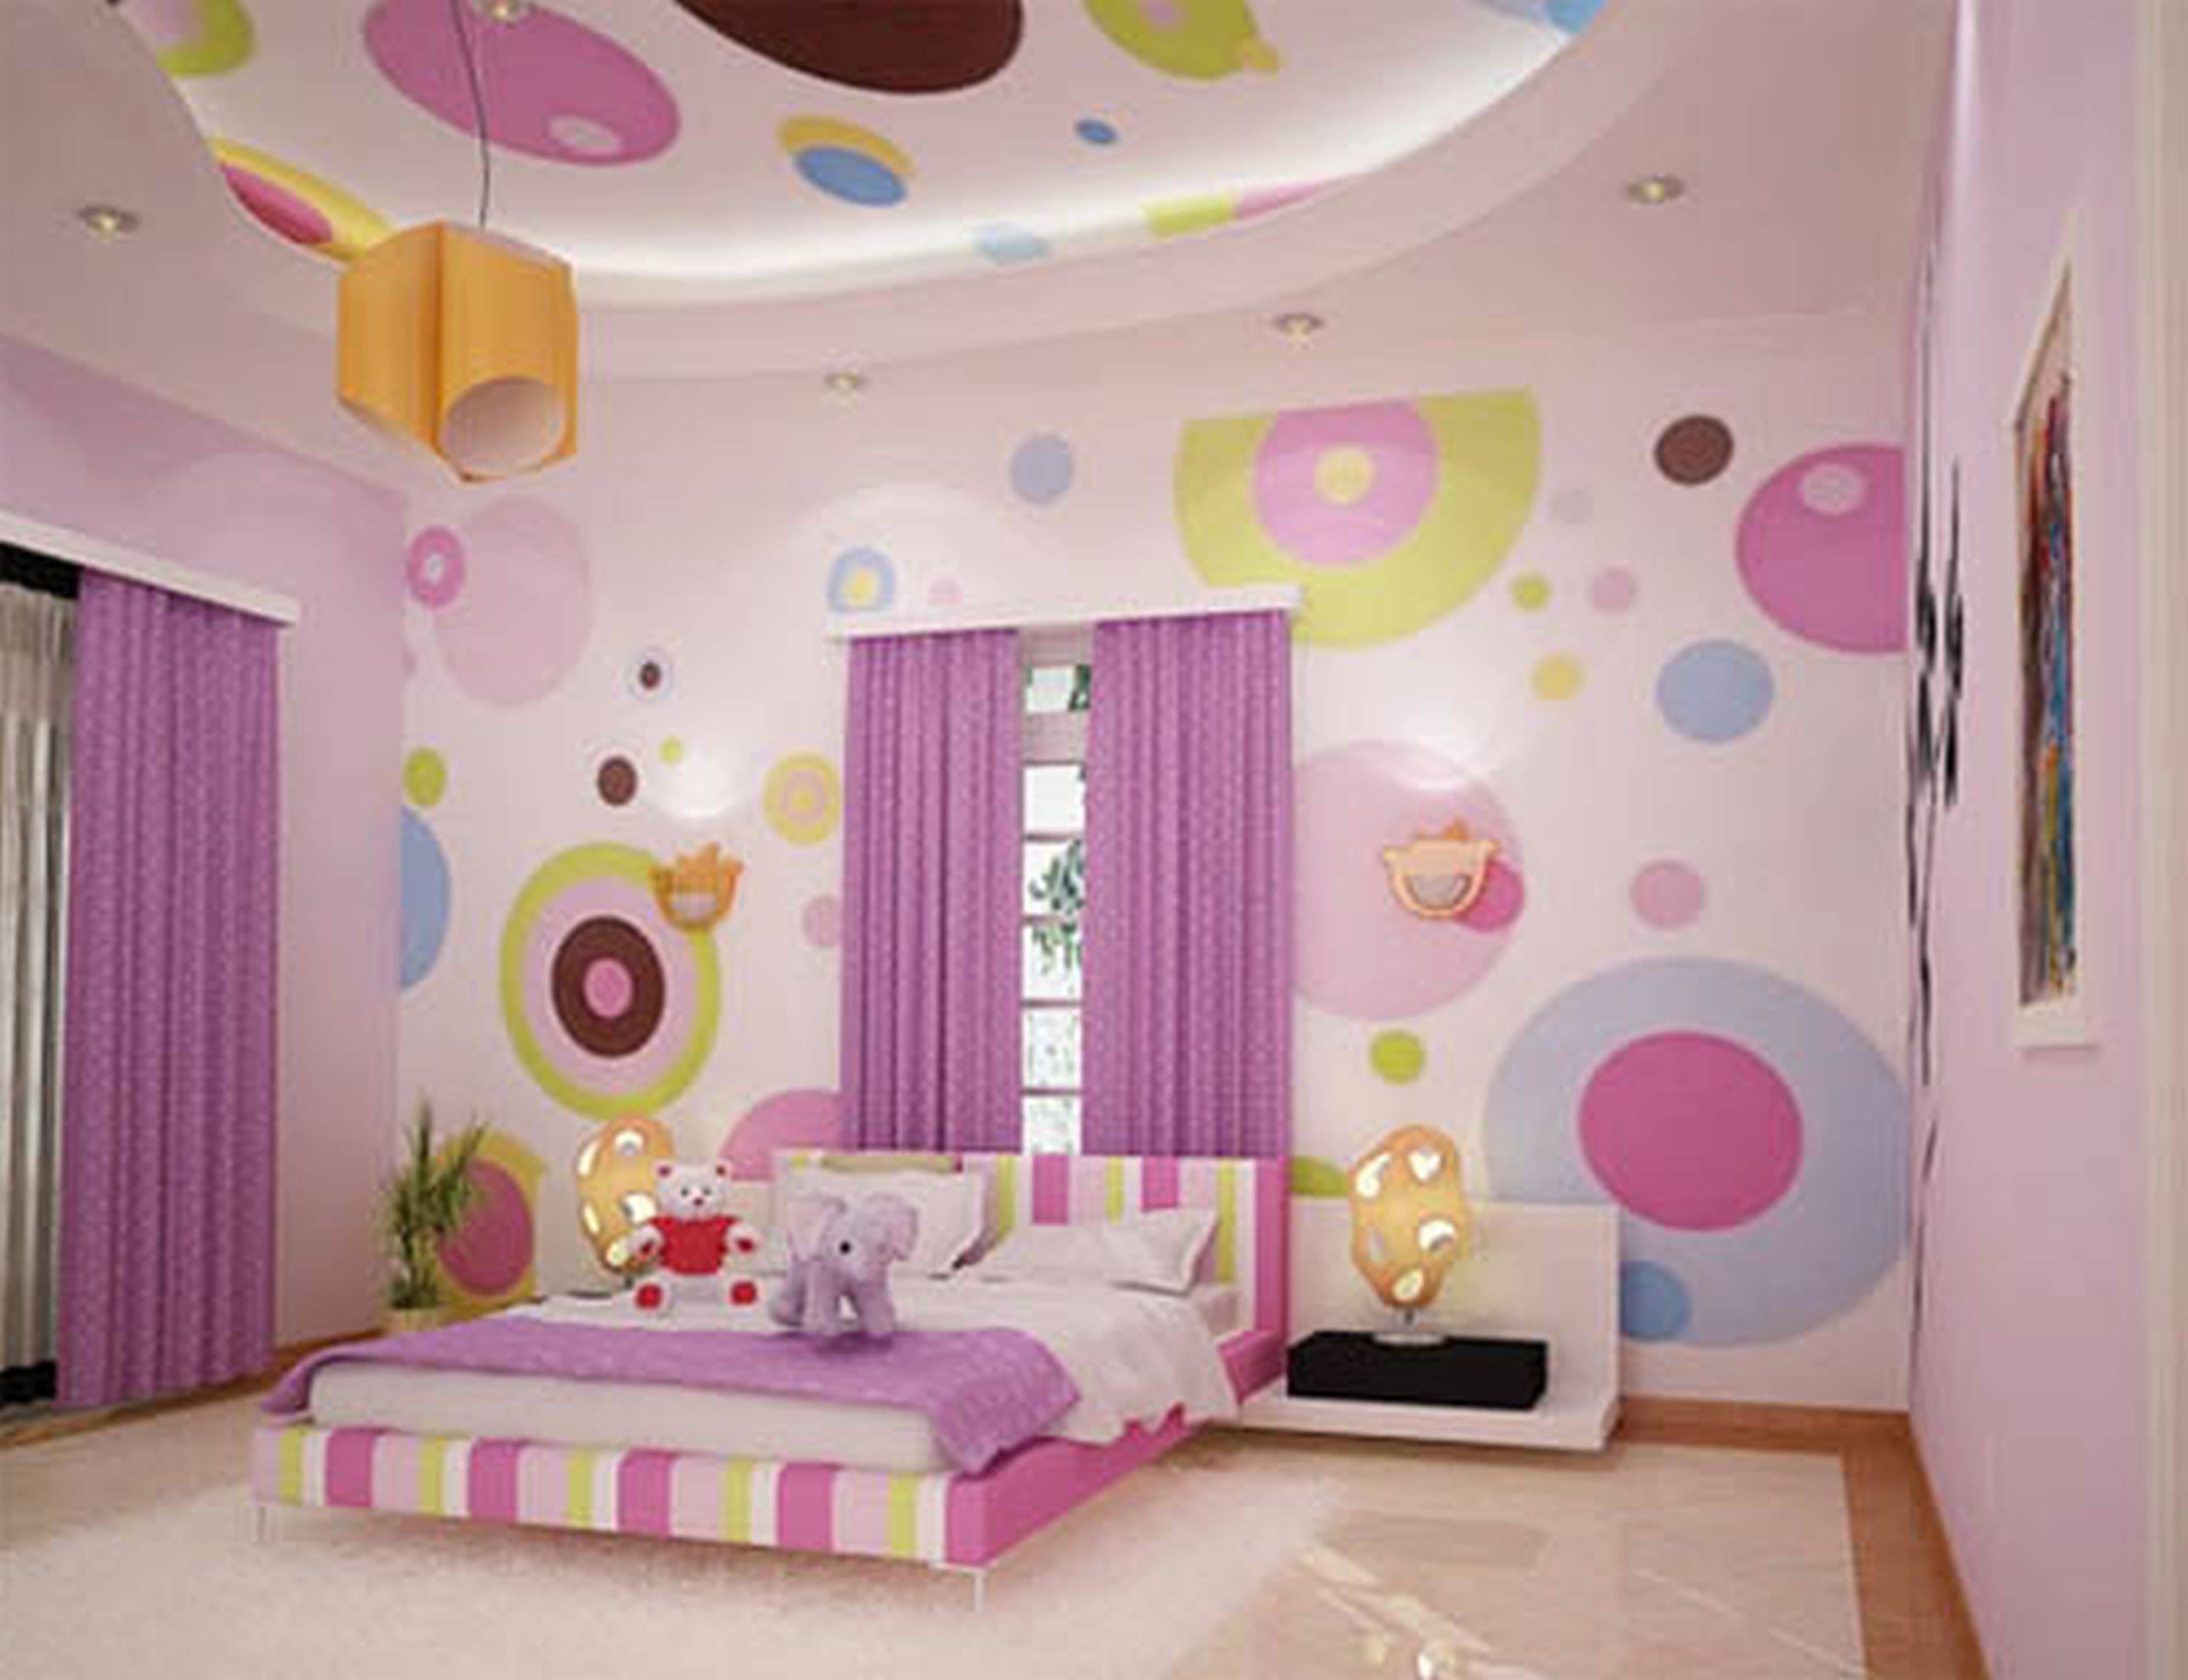 painting polka dot interior wall design